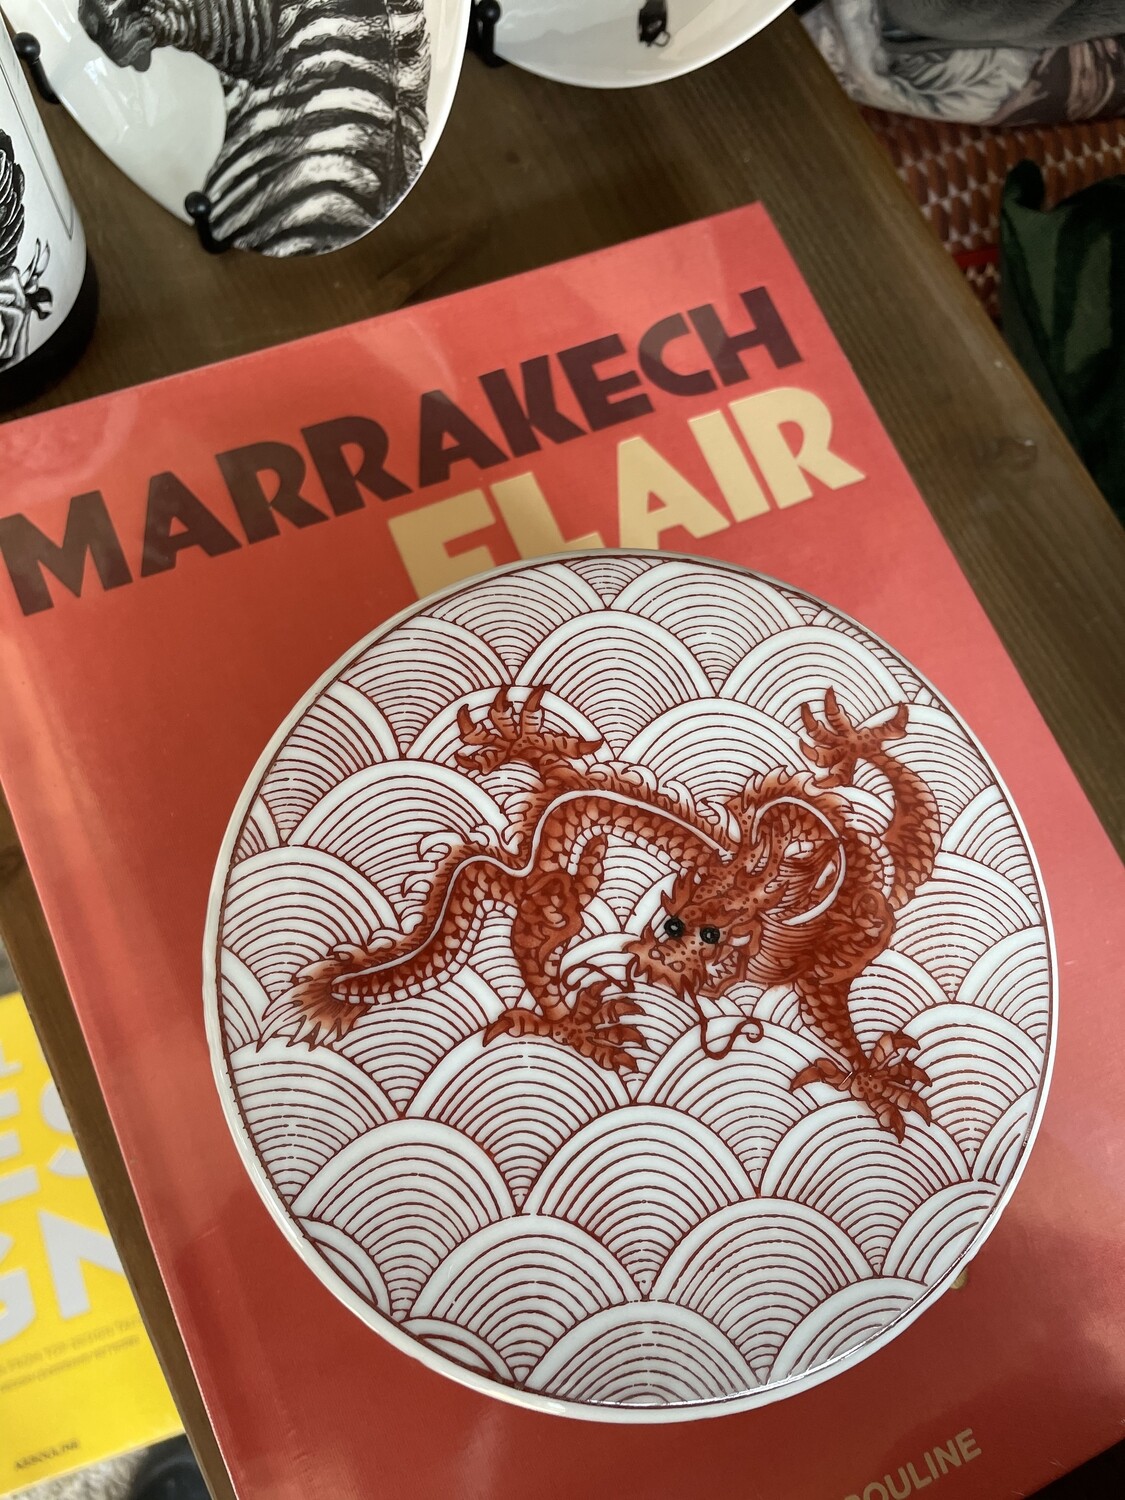 Marrakech Flair Assouline Book